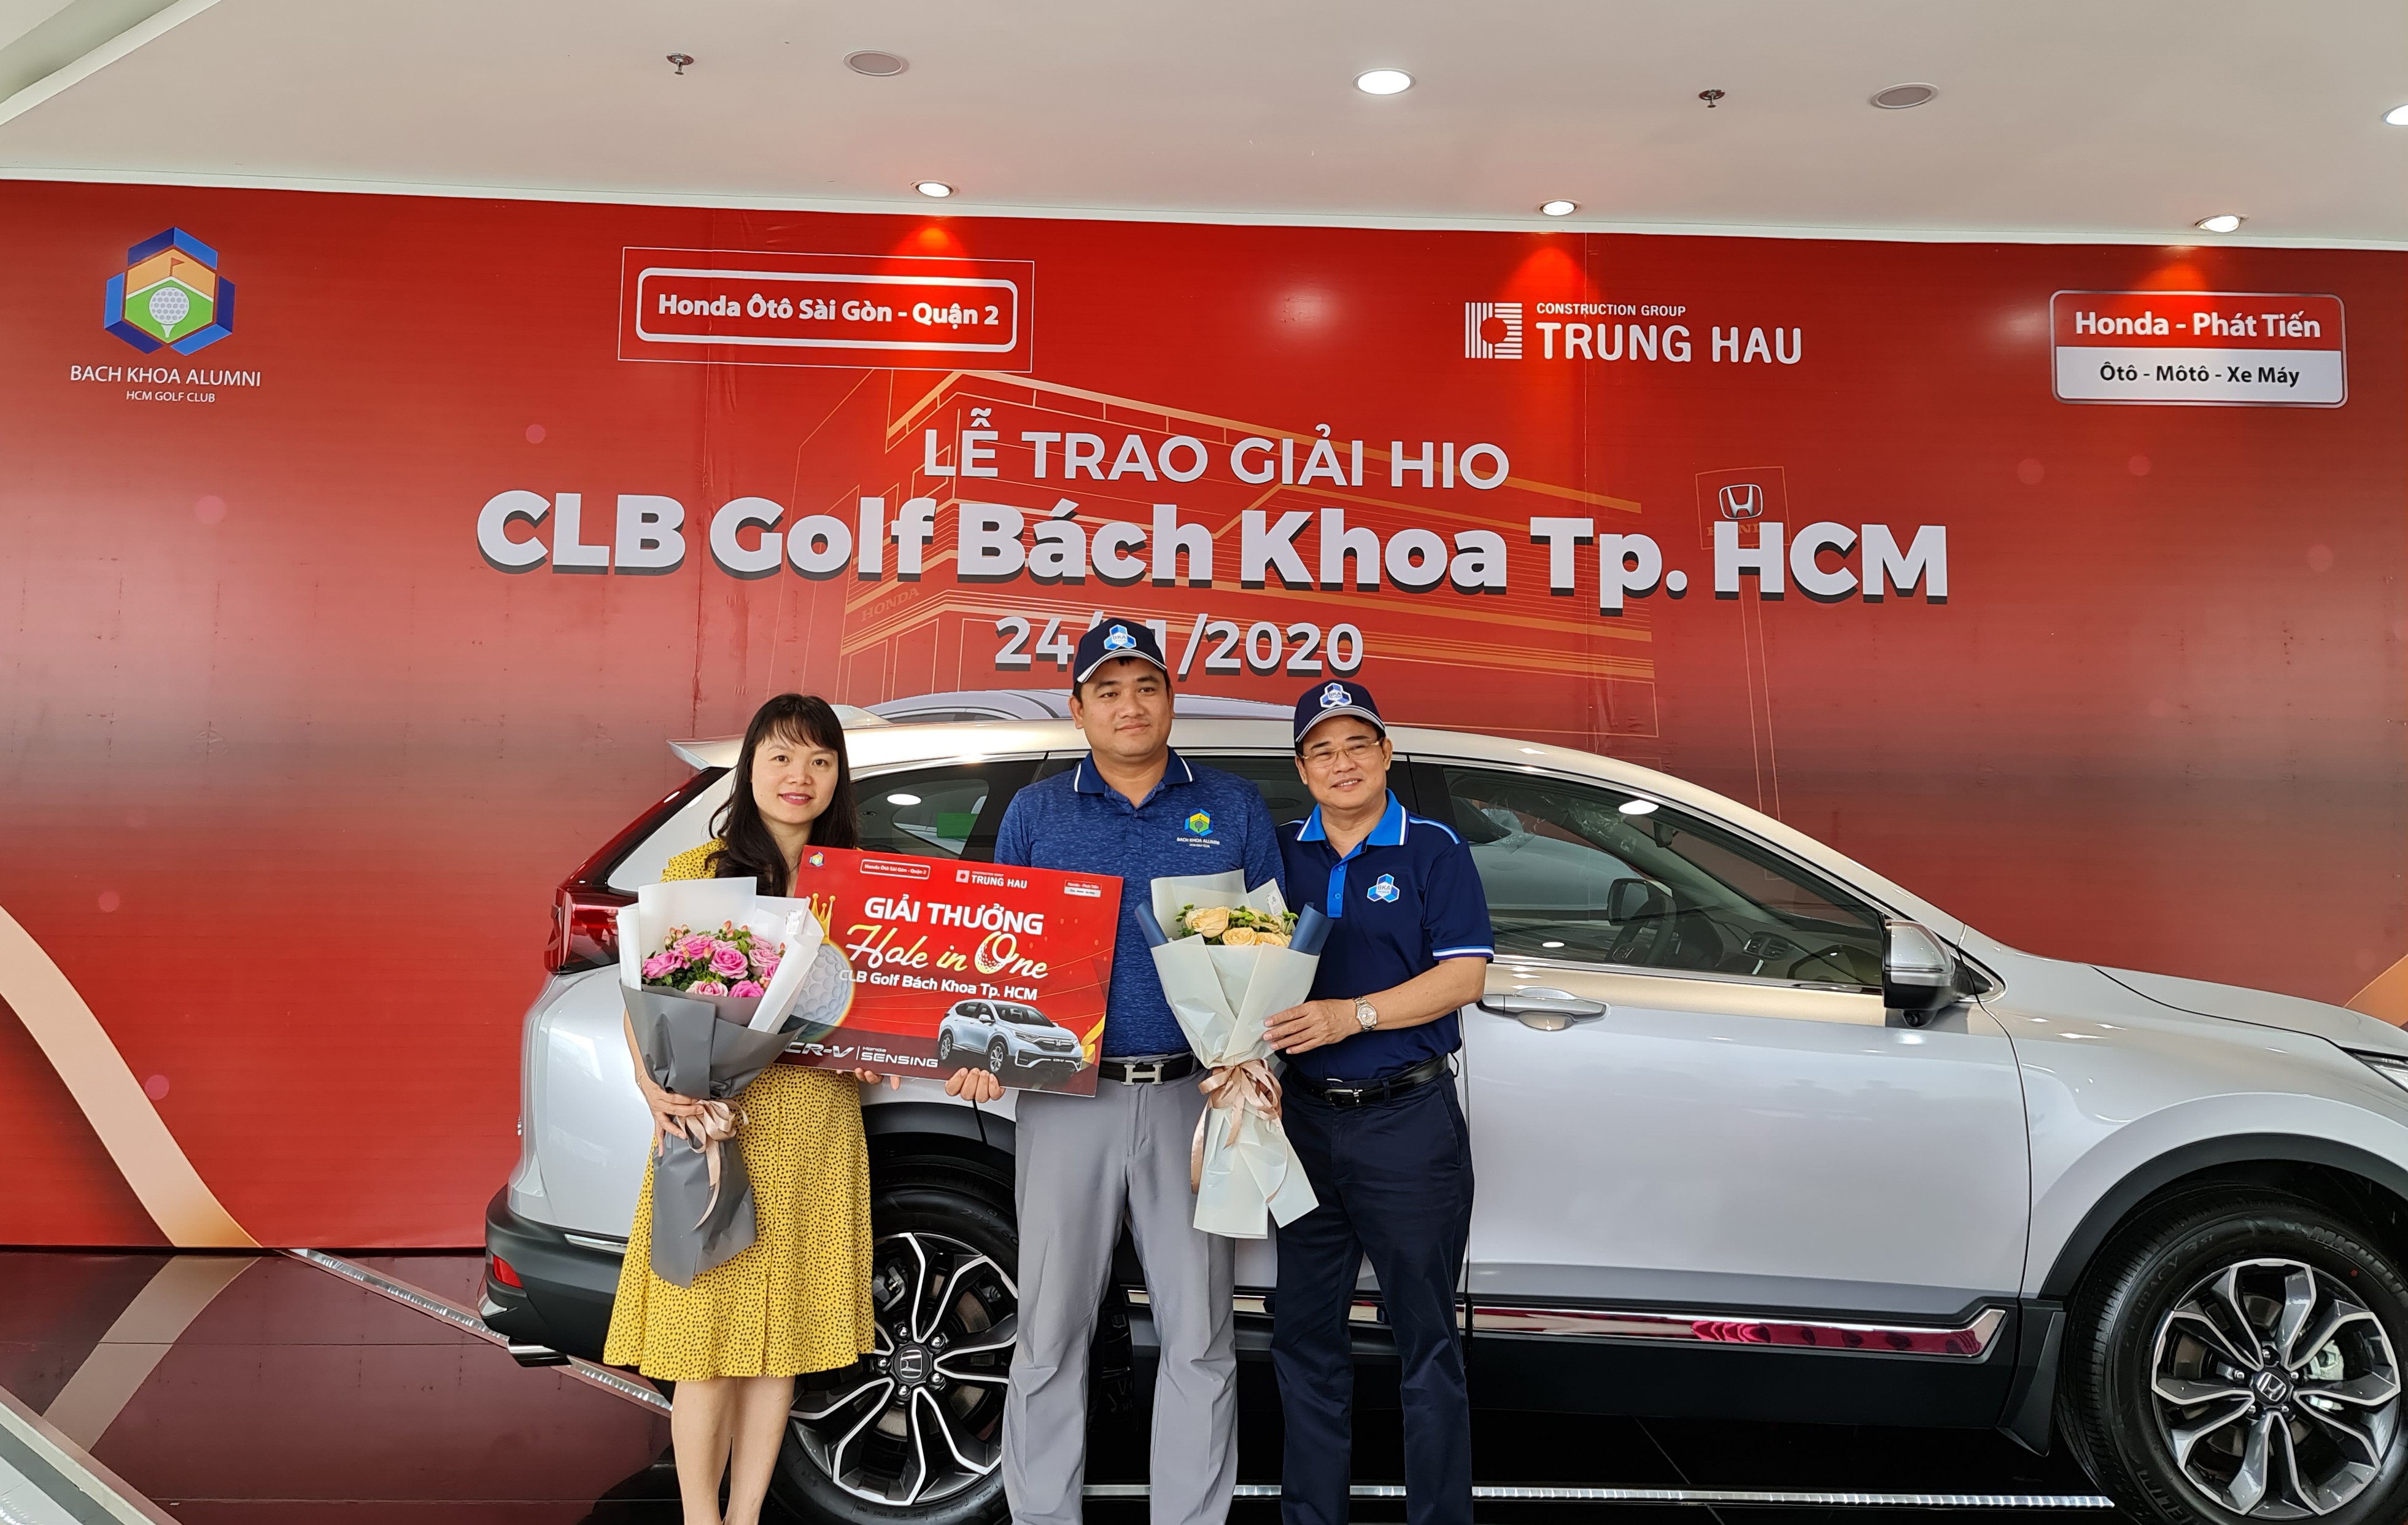 Honda Phat Tiến Phối Hợp Với Trung Hau Construction Group Trao O To Honda Crv Sensing Trị Gia 1 1 Tỷ đồng Cho Golfer đỗ Quang Huy Cafe Business